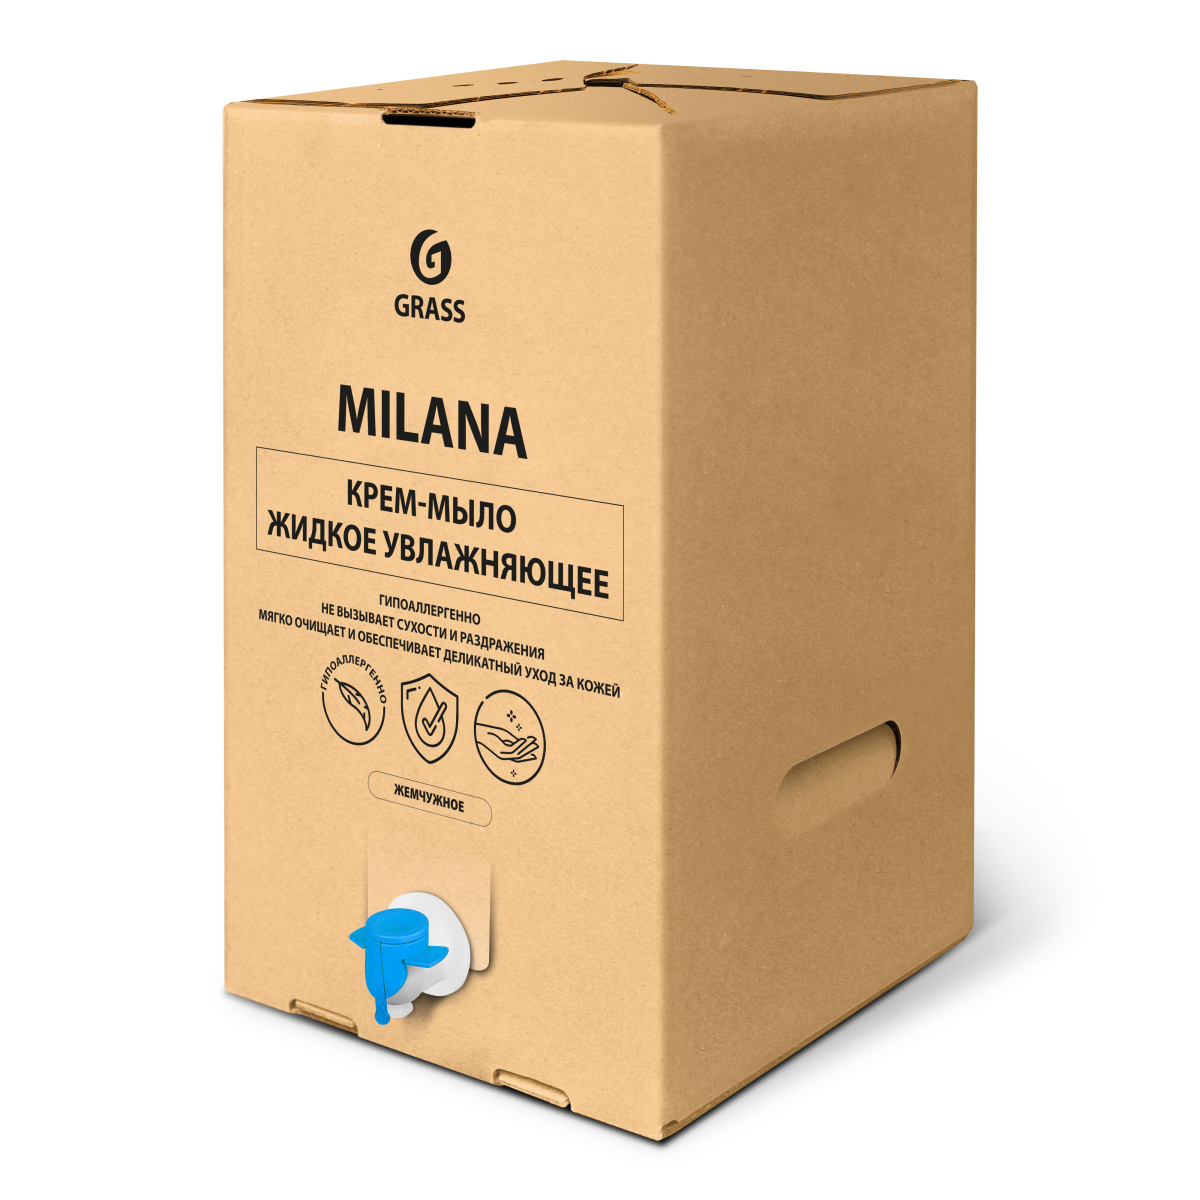 Крем-мыло жидкое увлажняющее Milana жемчужное (bag-in-box 20.4 кг)